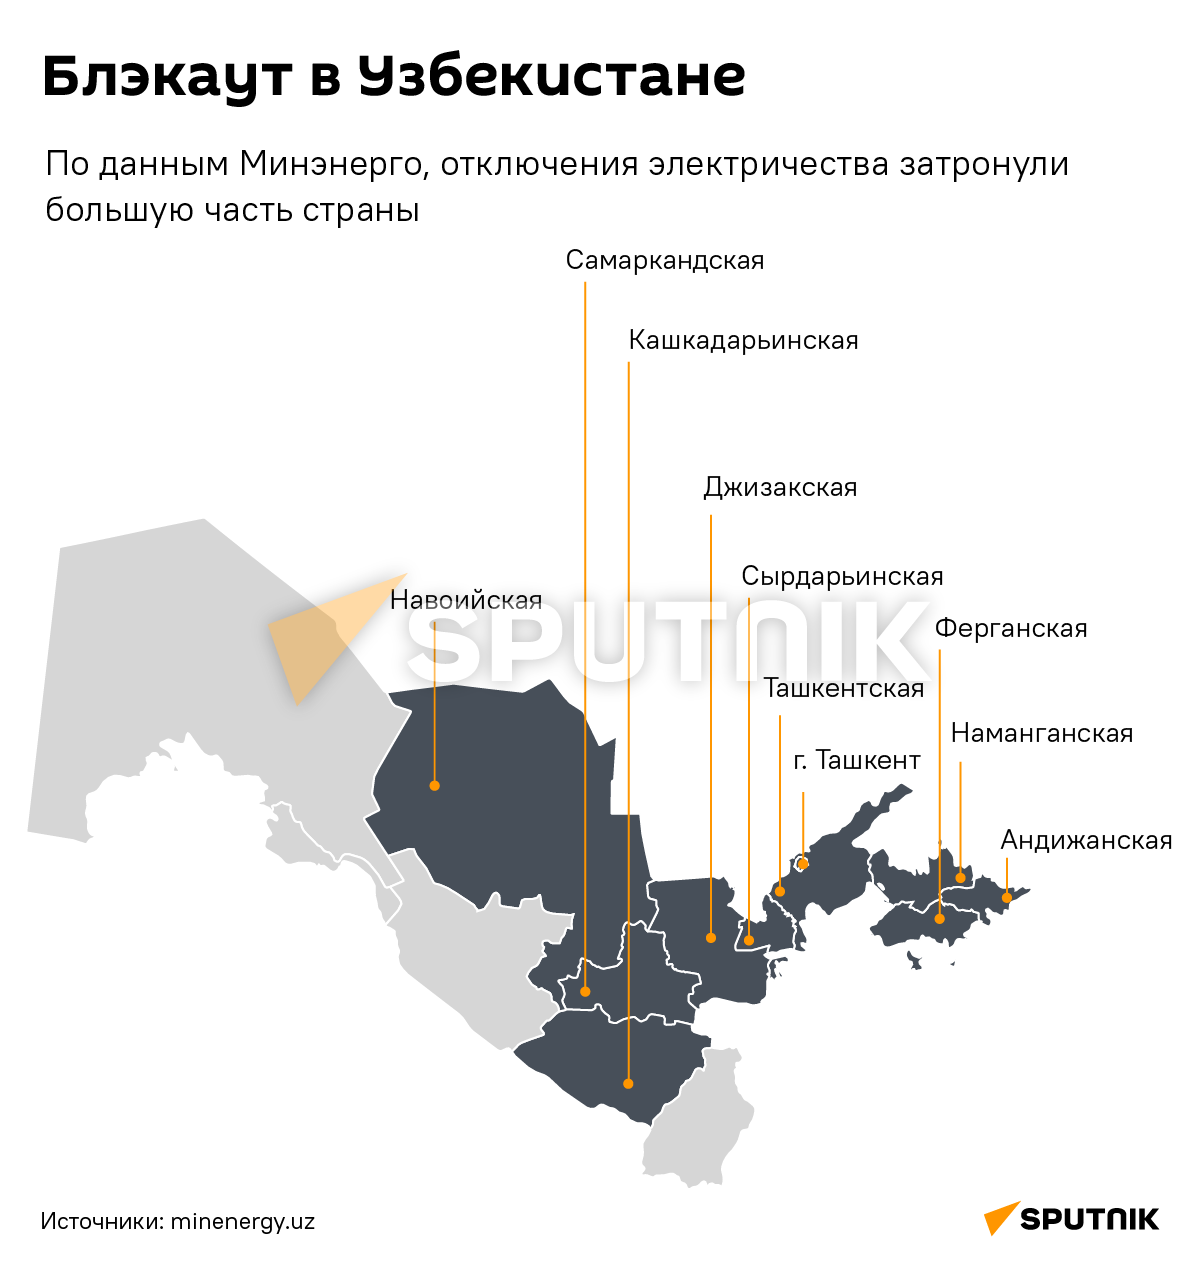 Блэкаут в Центральной Азии - Sputnik Узбекистан